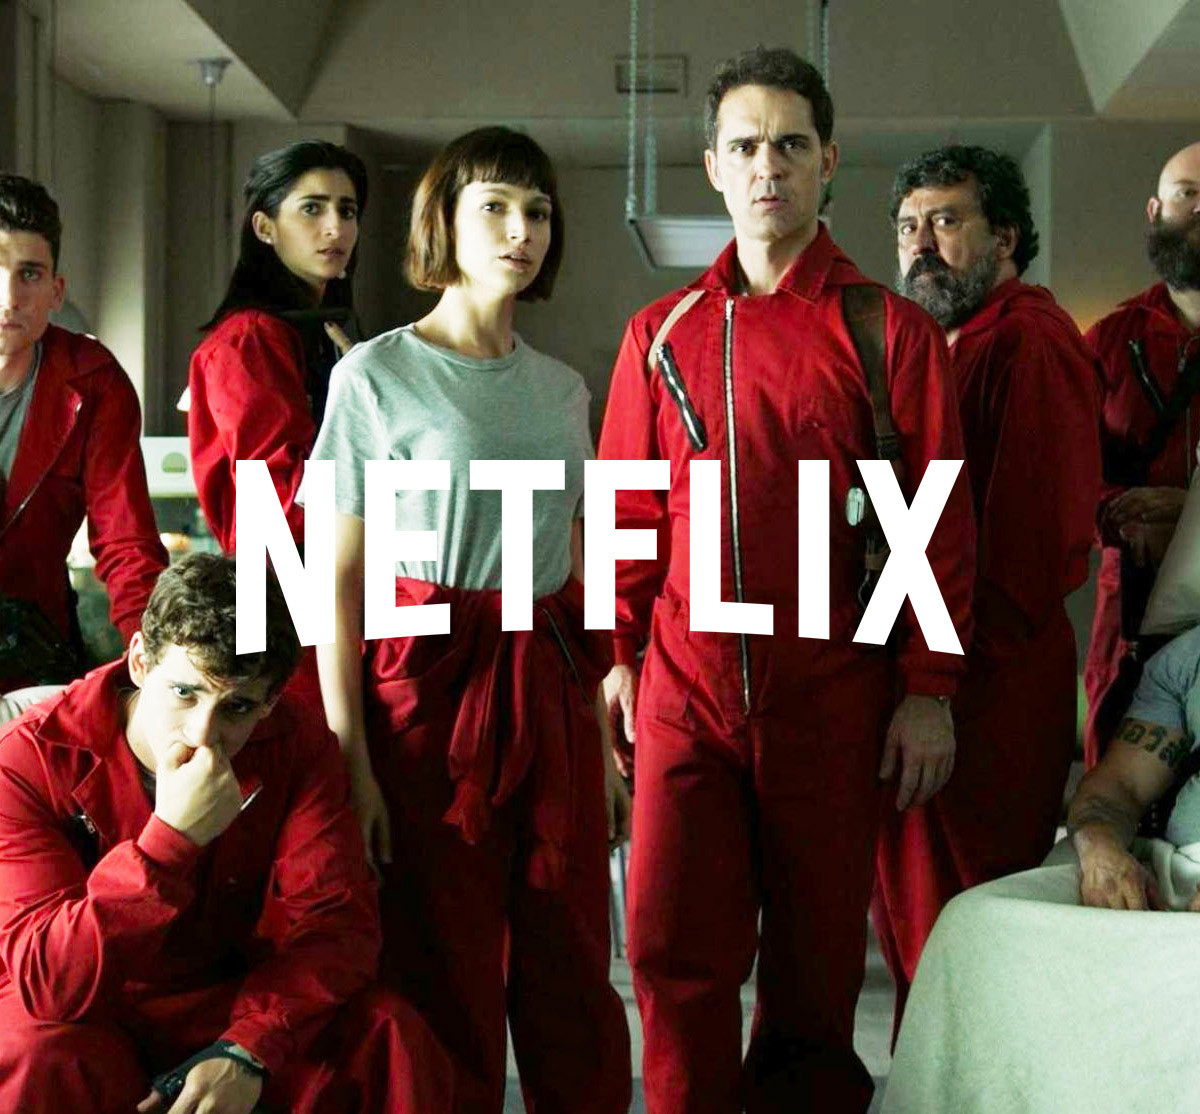 Las 5 series más vistas en Netflix en el 2018